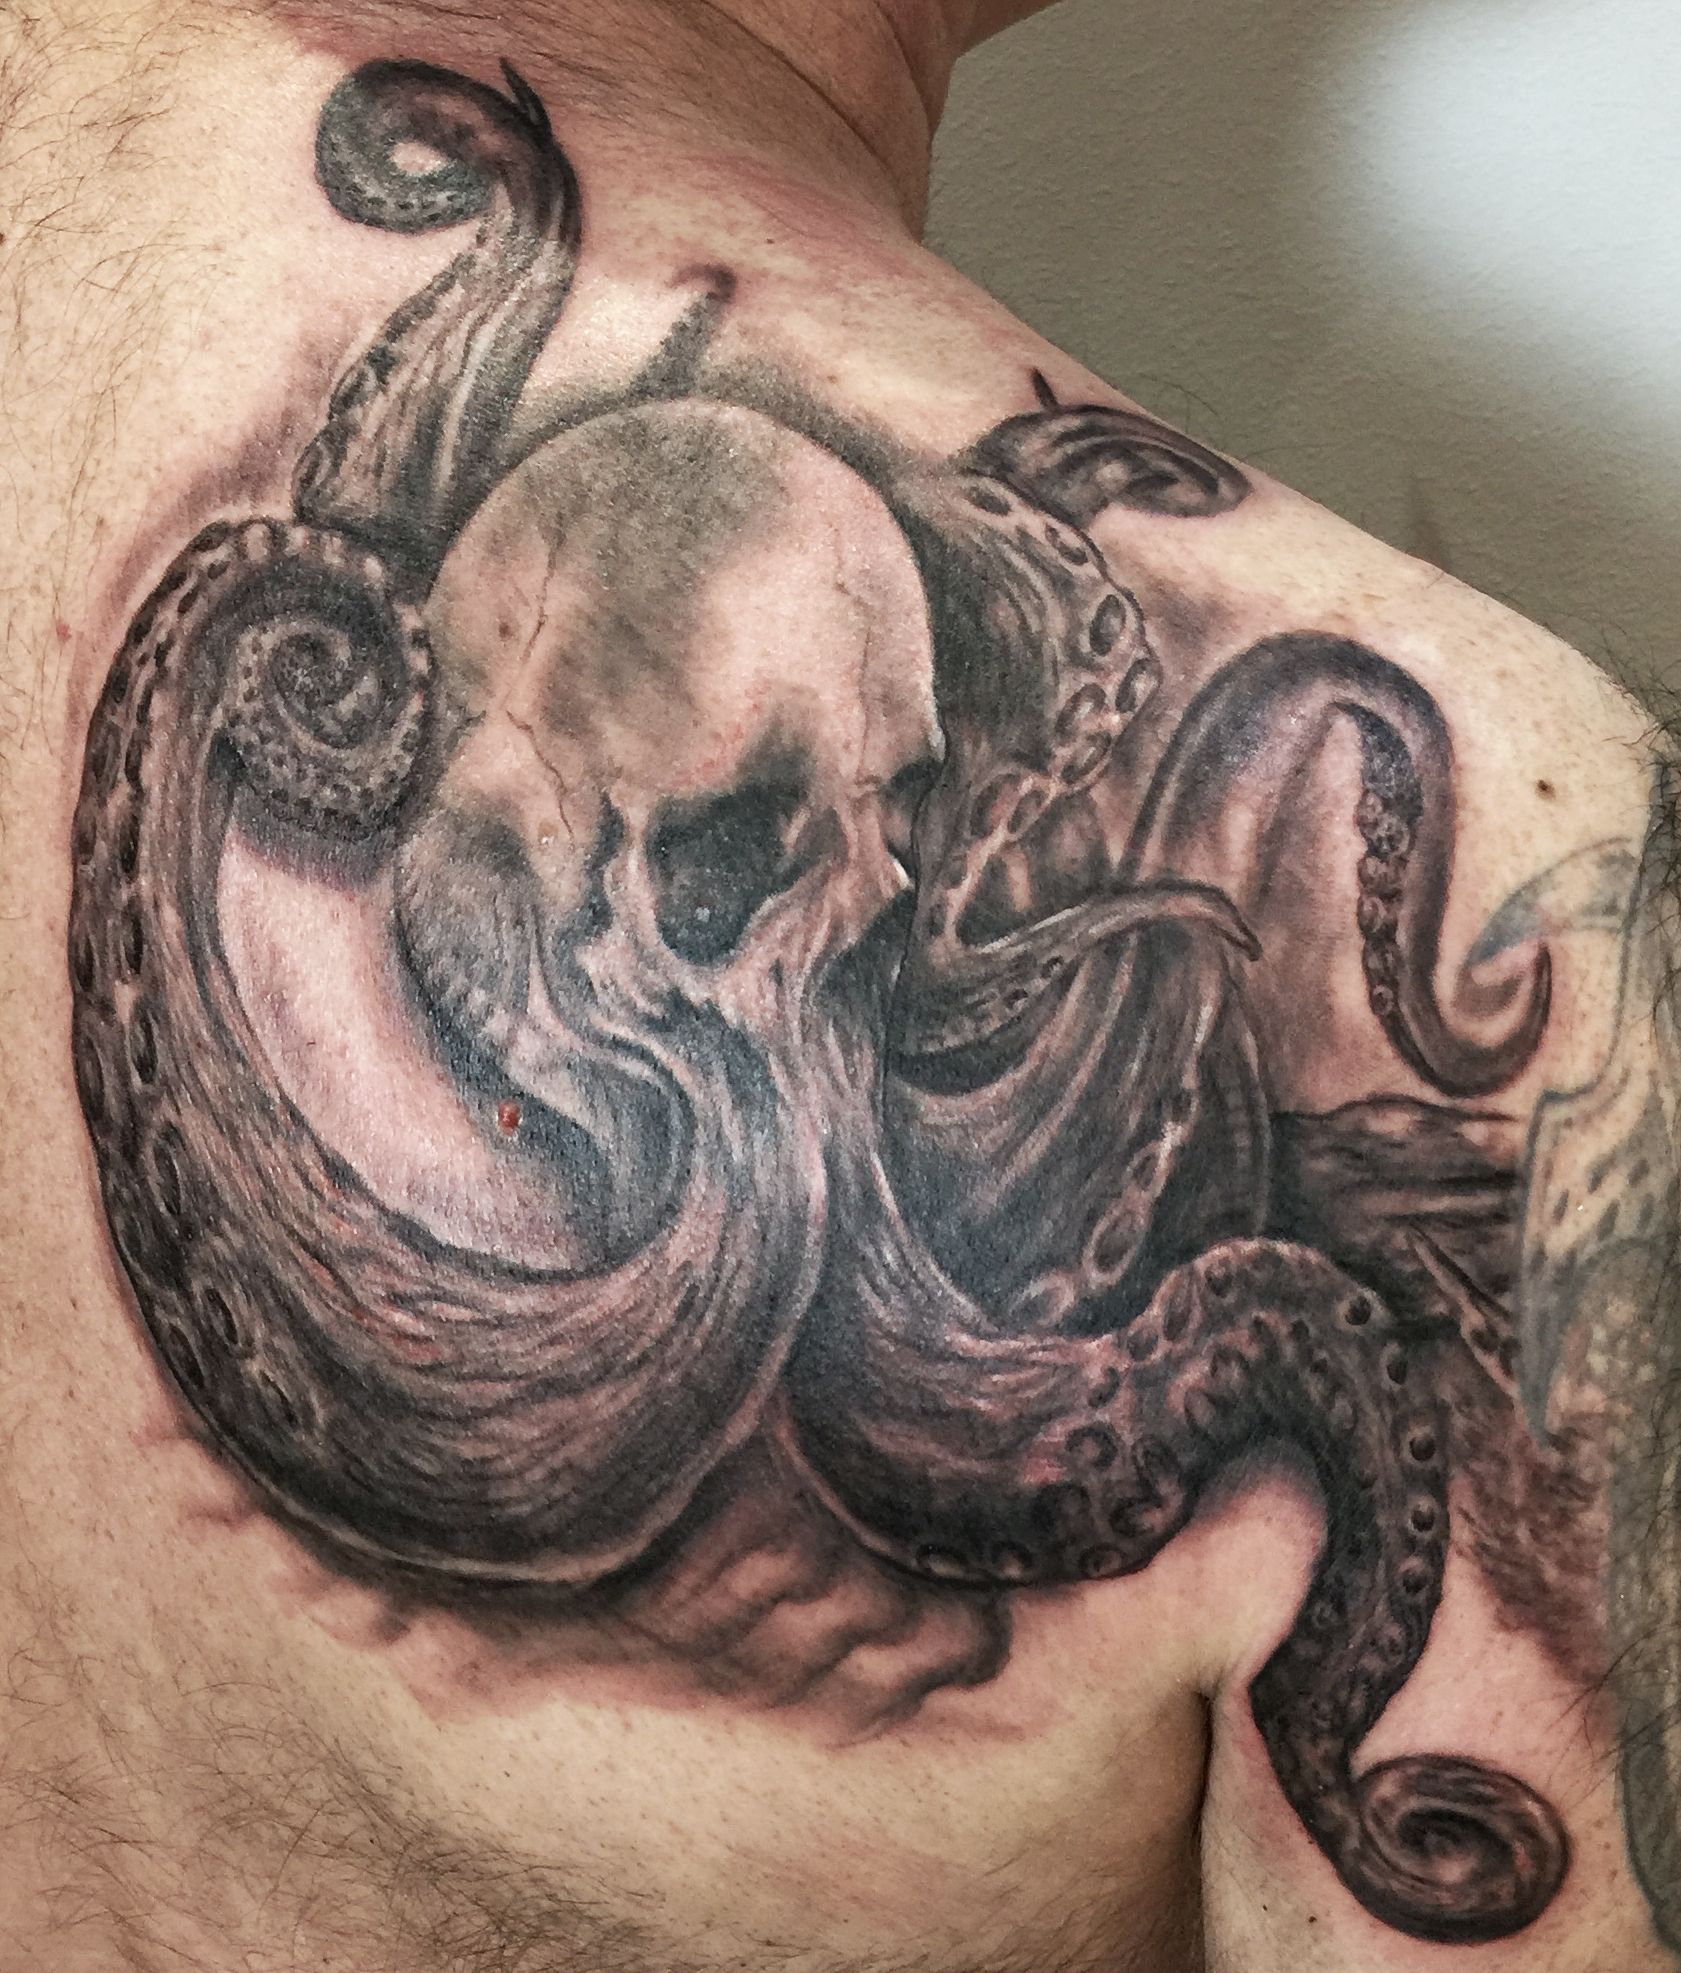 tattoo studio anansi münchen munich laszlo oktobpus skull tattoo tätowierung